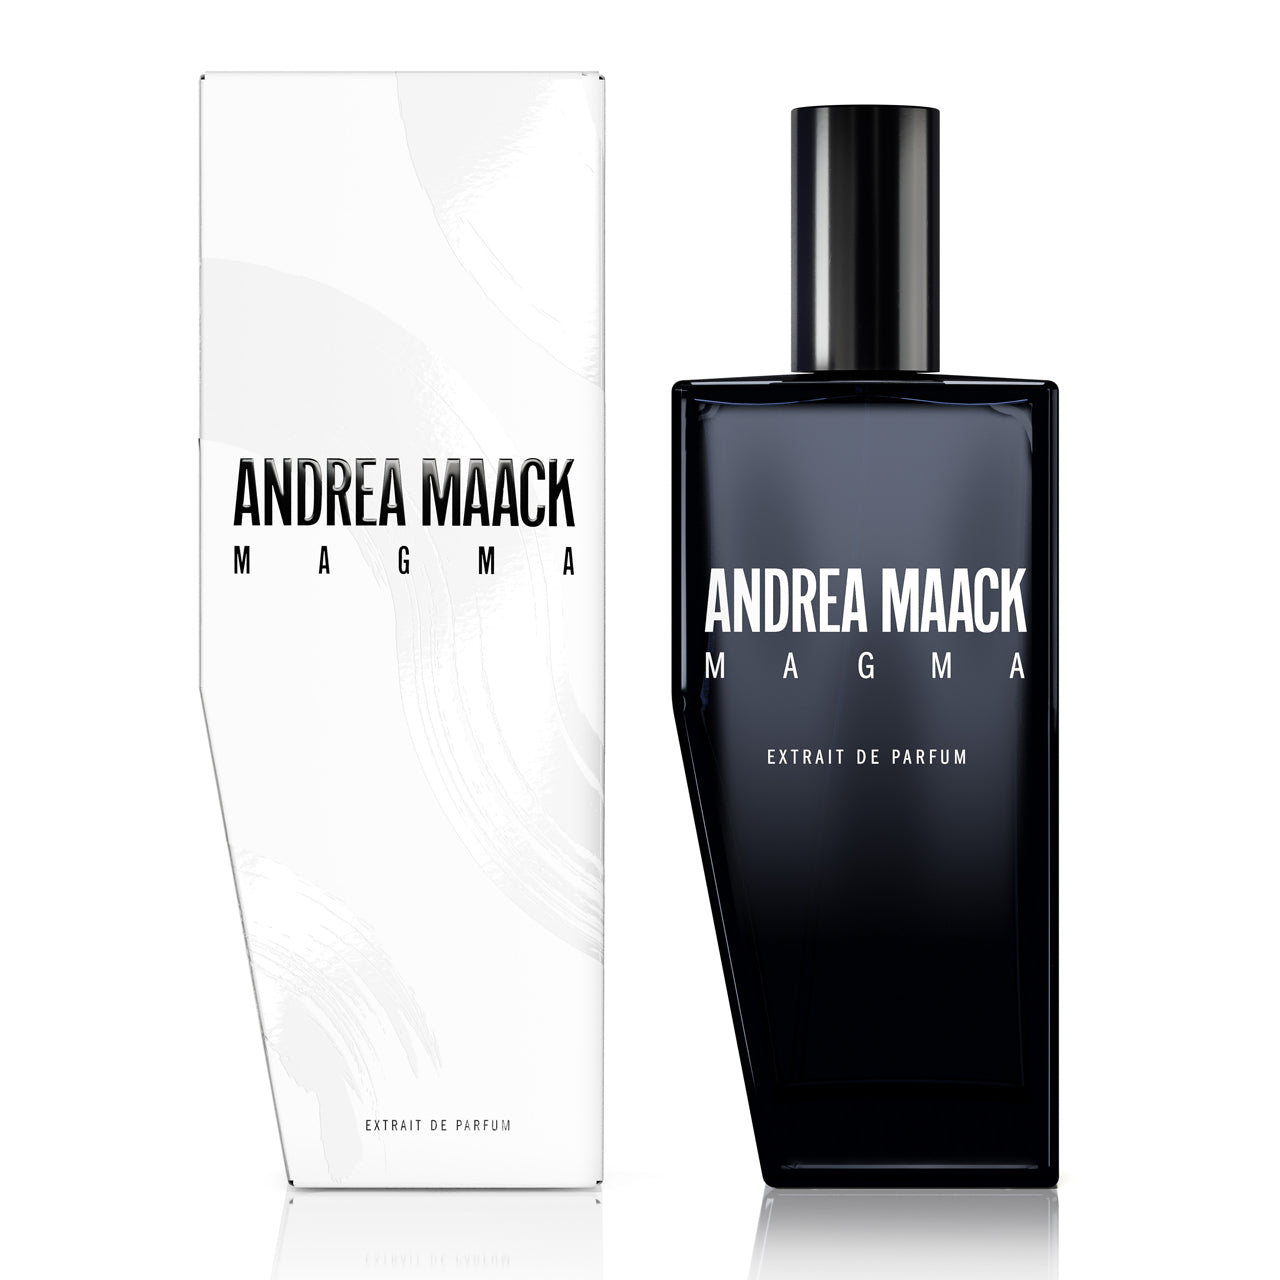 Andrea Maack MAGMA Extract